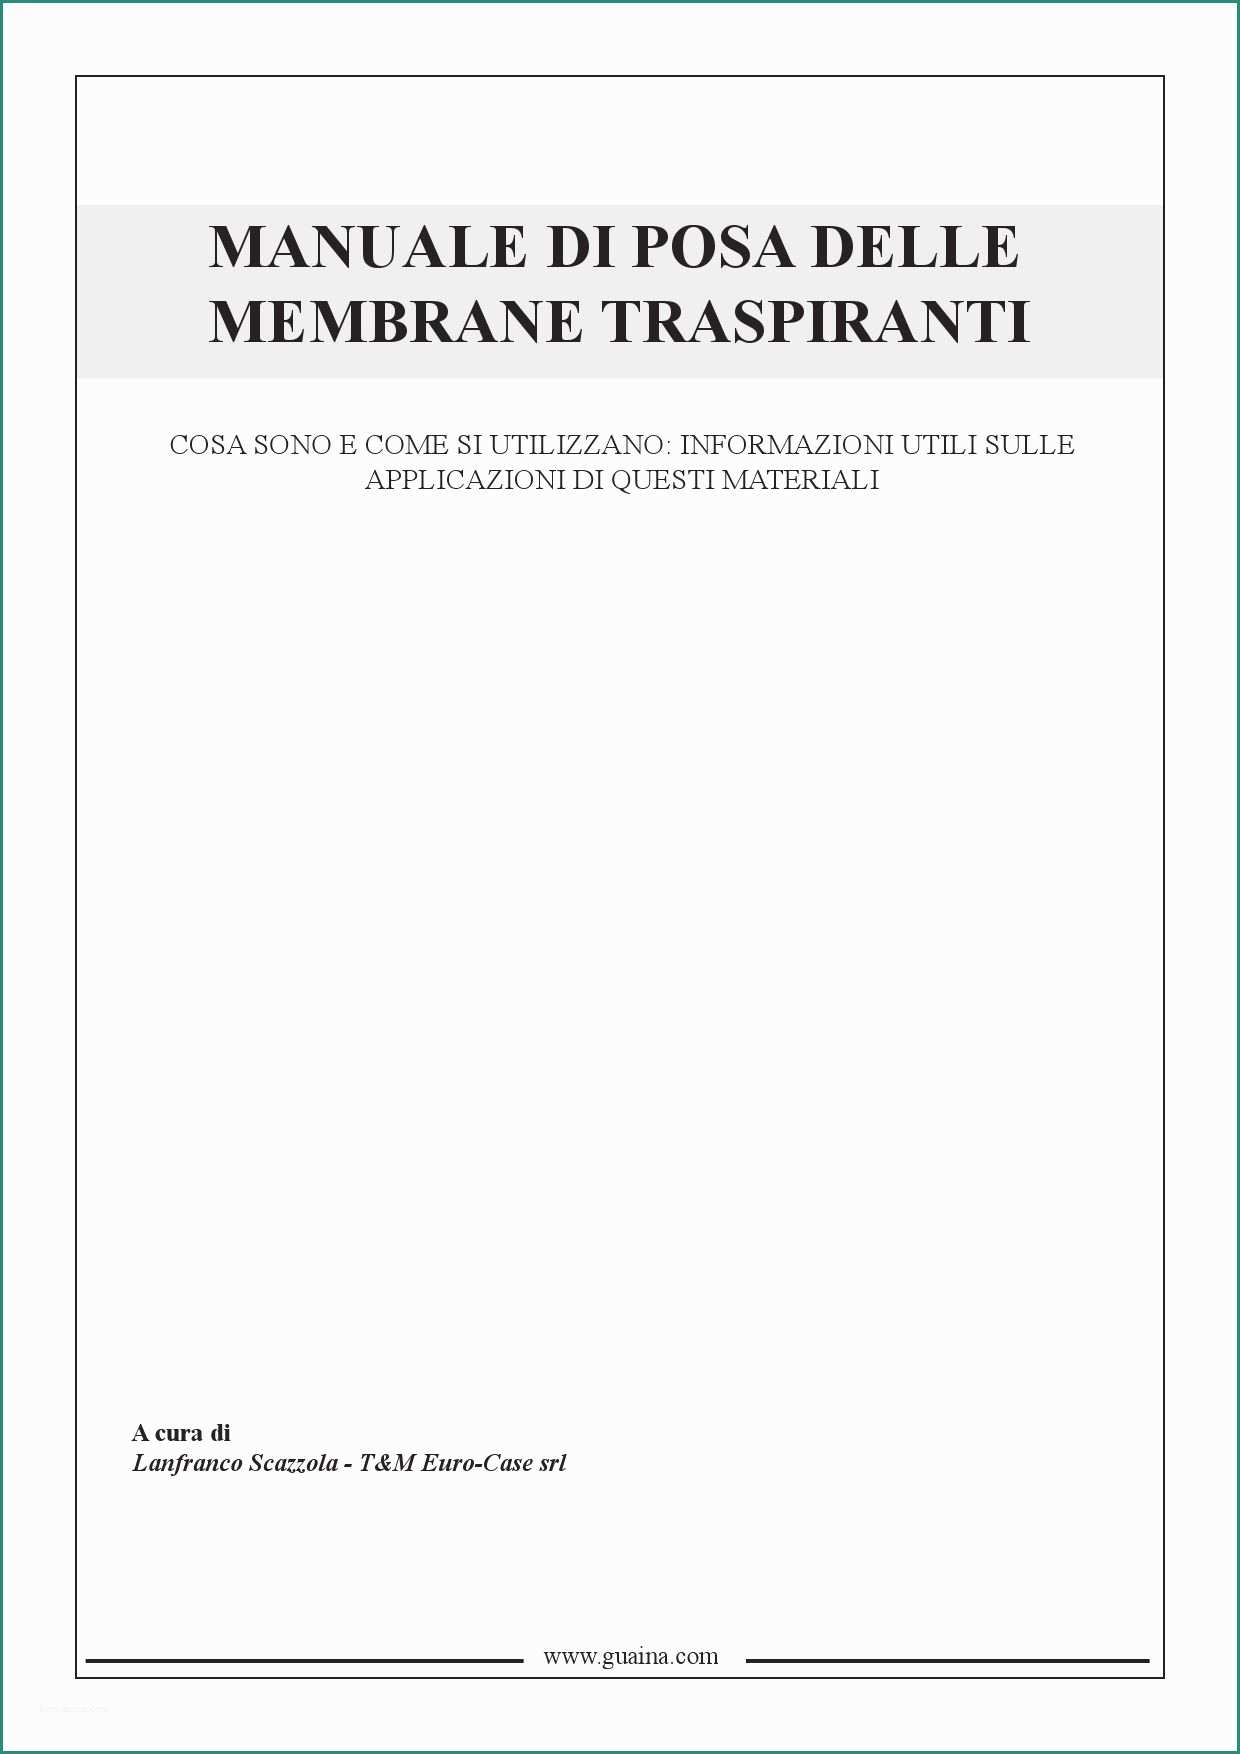 Prezzi Pannelli isolanti Per Tetti E Manuale Di Posa T&m Euro Case by Leslies Scazzola issuu